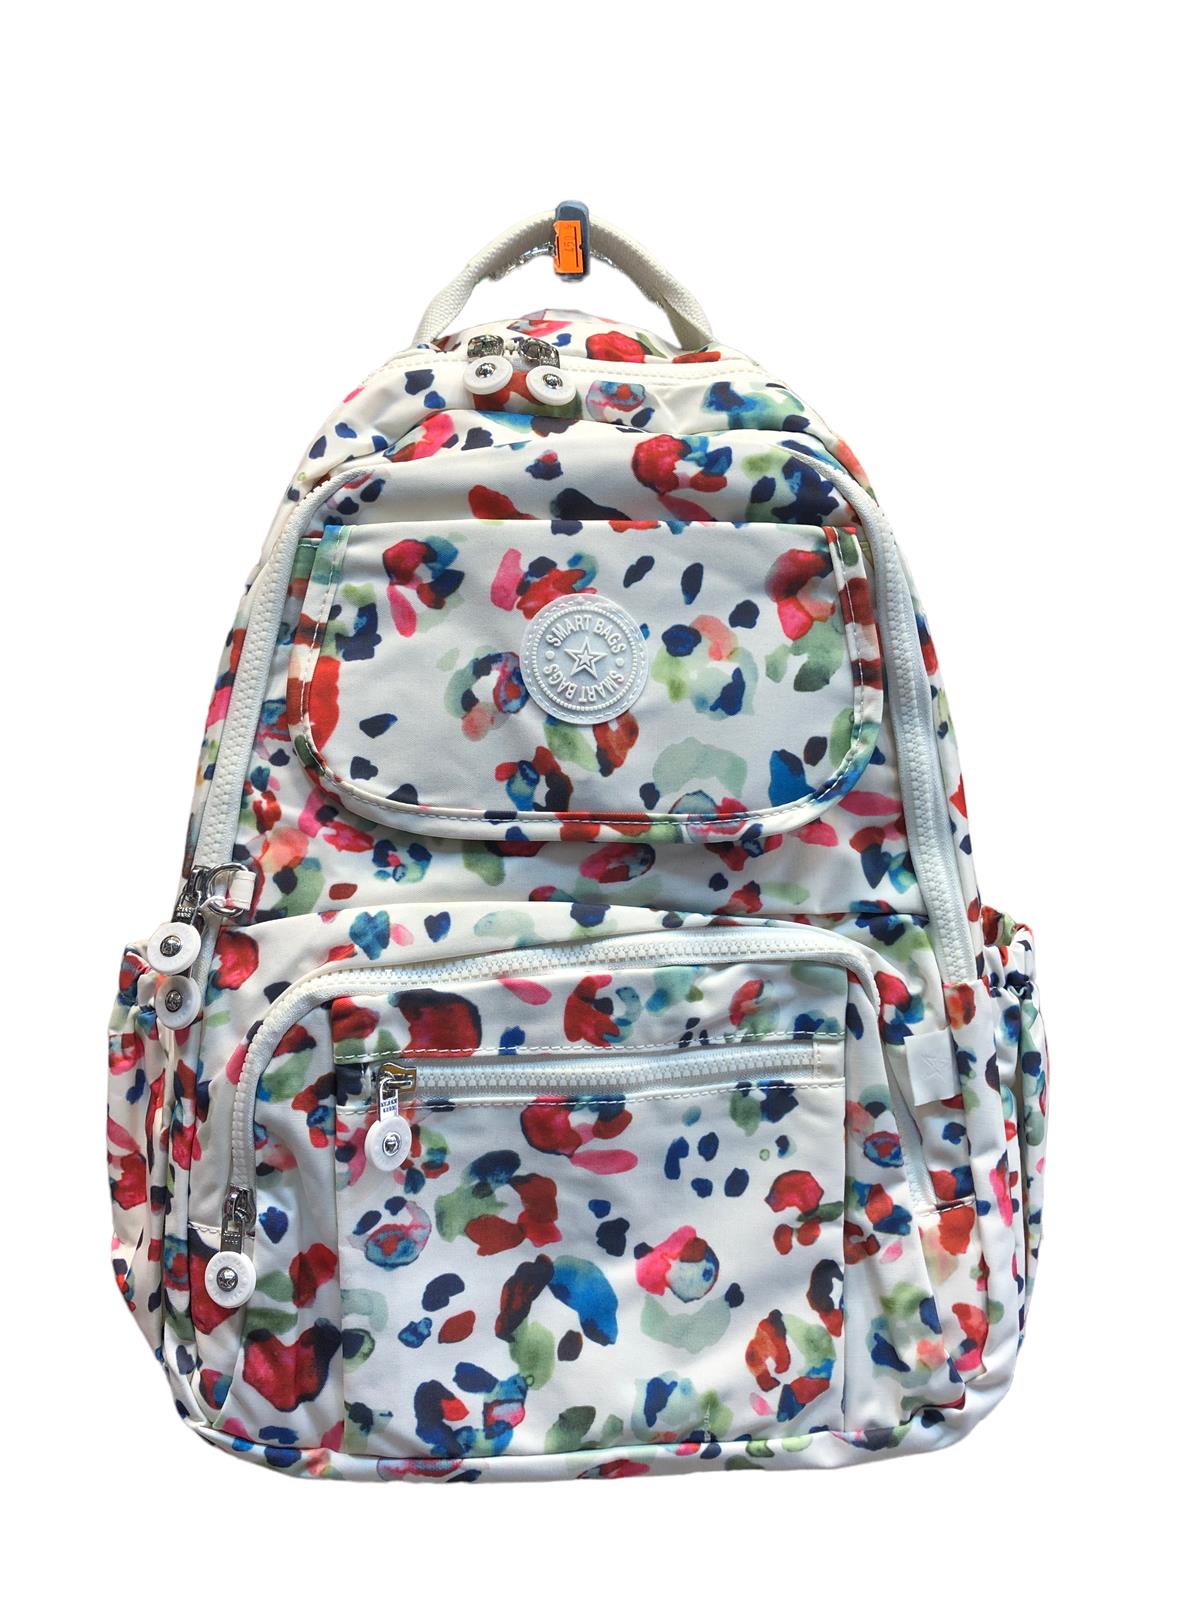 Günlük ve okul çantası smart bags su geçirmez çiçekli okul çantası desenli  |elizabell.com.tr